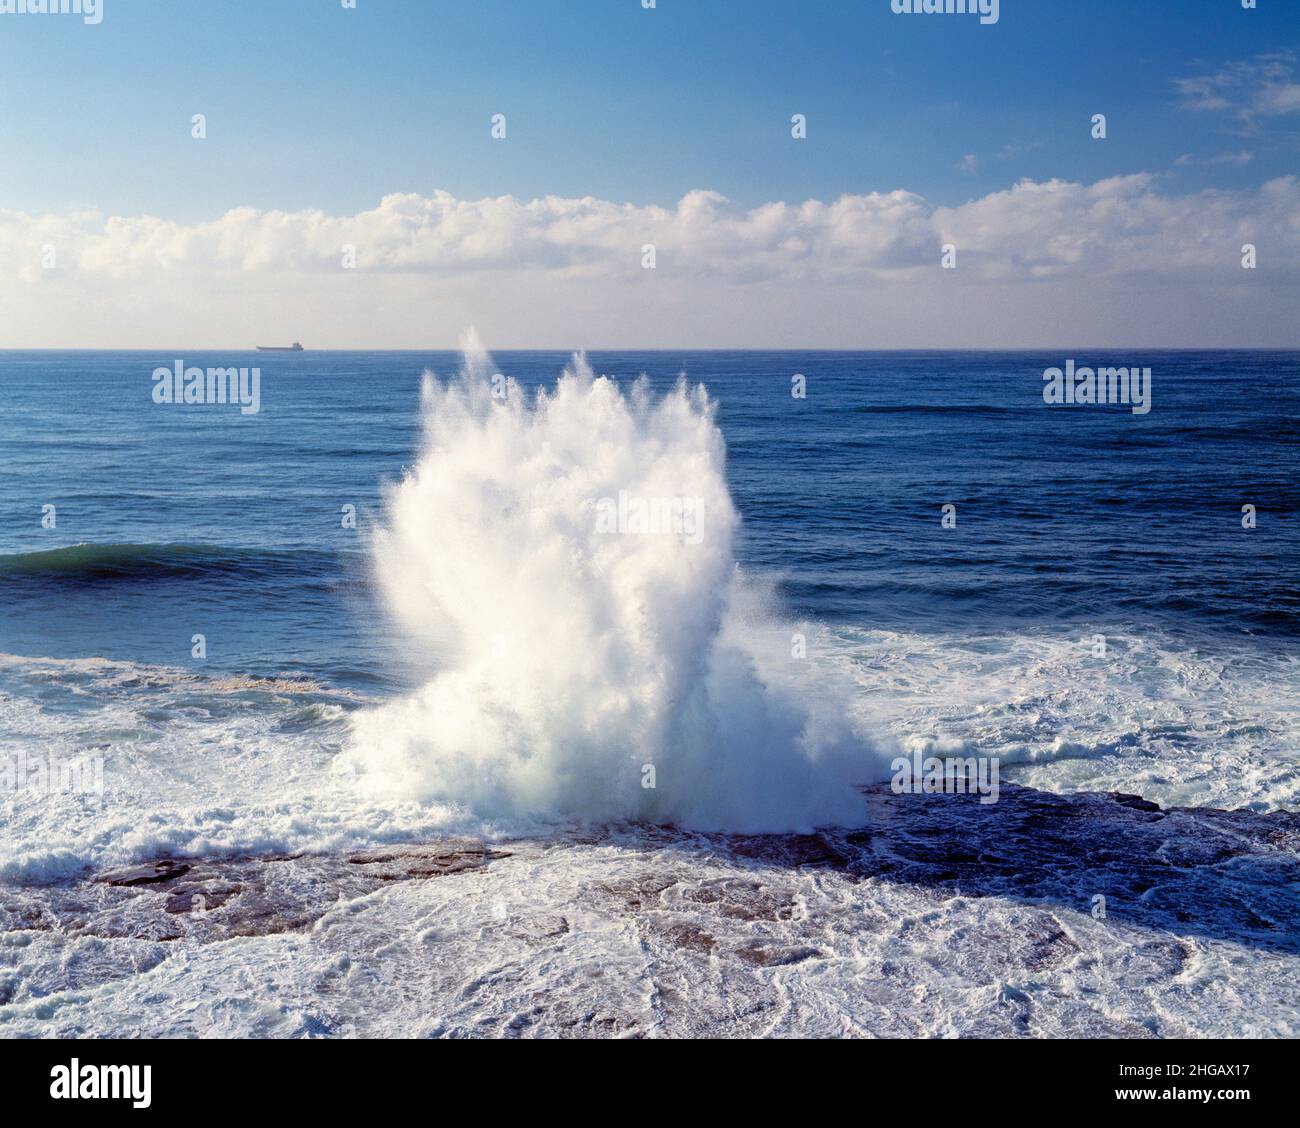 Australia. Sydney. Wave splashing on rocks. Stock Photo